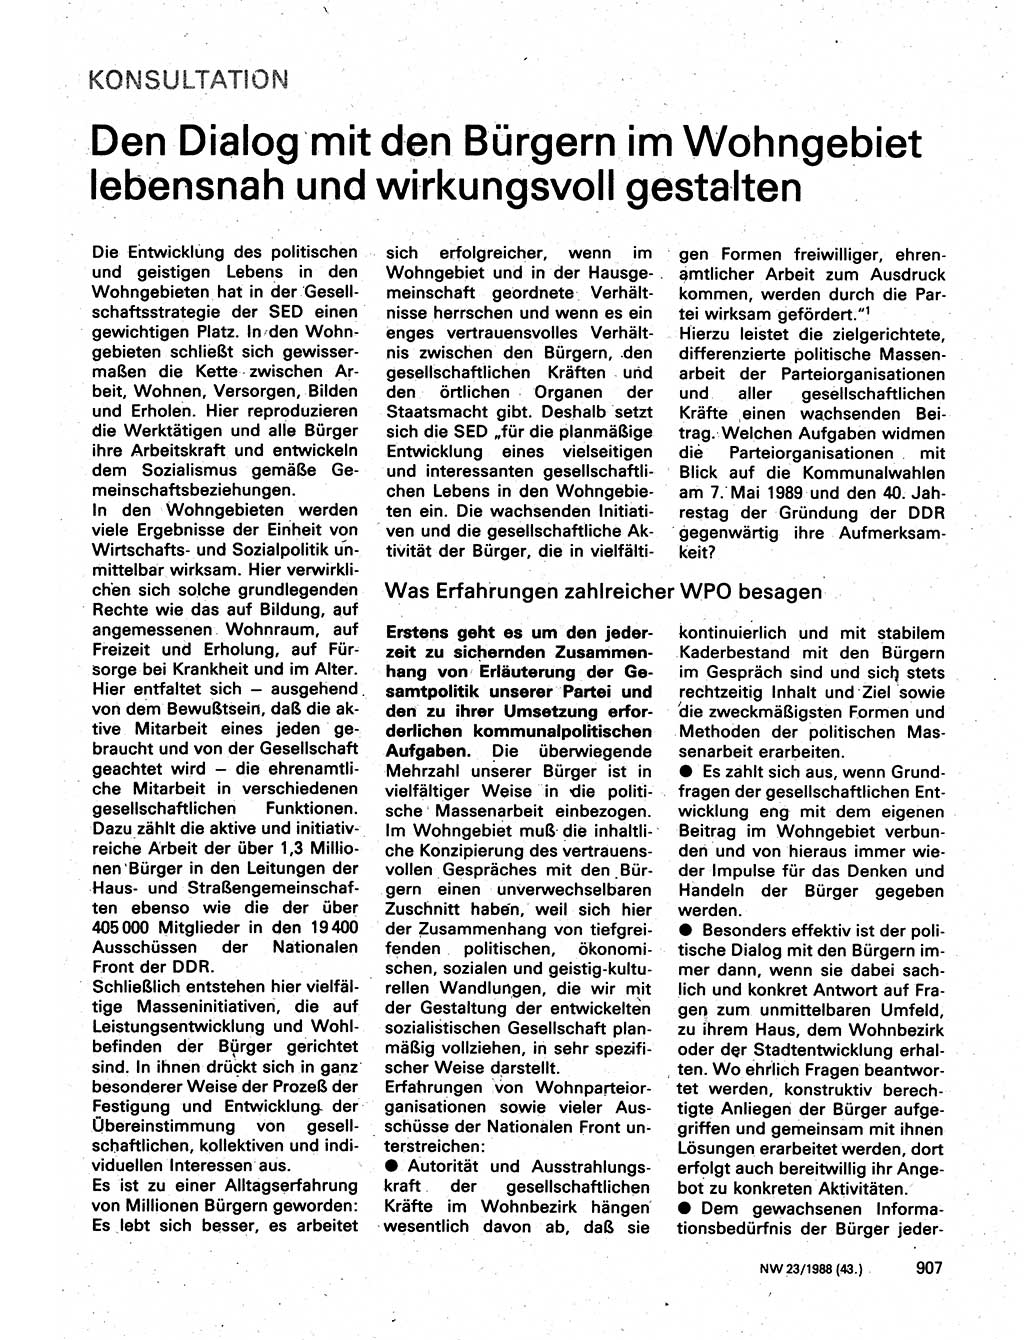 Neuer Weg (NW), Organ des Zentralkomitees (ZK) der SED (Sozialistische Einheitspartei Deutschlands) fÃ¼r Fragen des Parteilebens, 43. Jahrgang [Deutsche Demokratische Republik (DDR)] 1988, Seite 907 (NW ZK SED DDR 1988, S. 907)